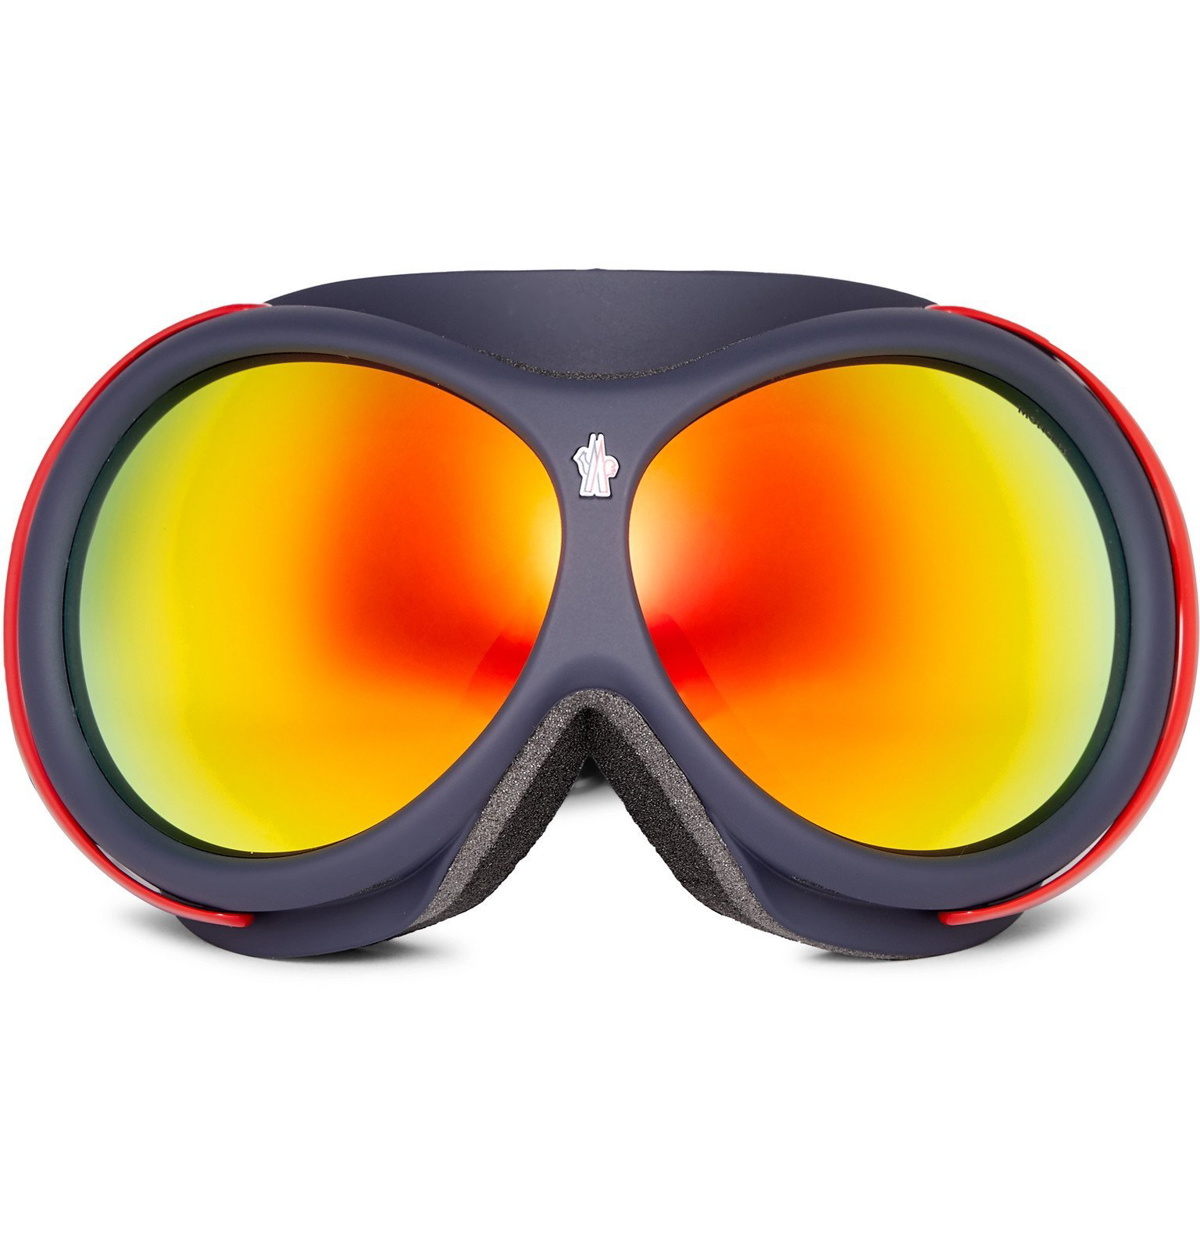 Terrabeam S2 Ski Goggles